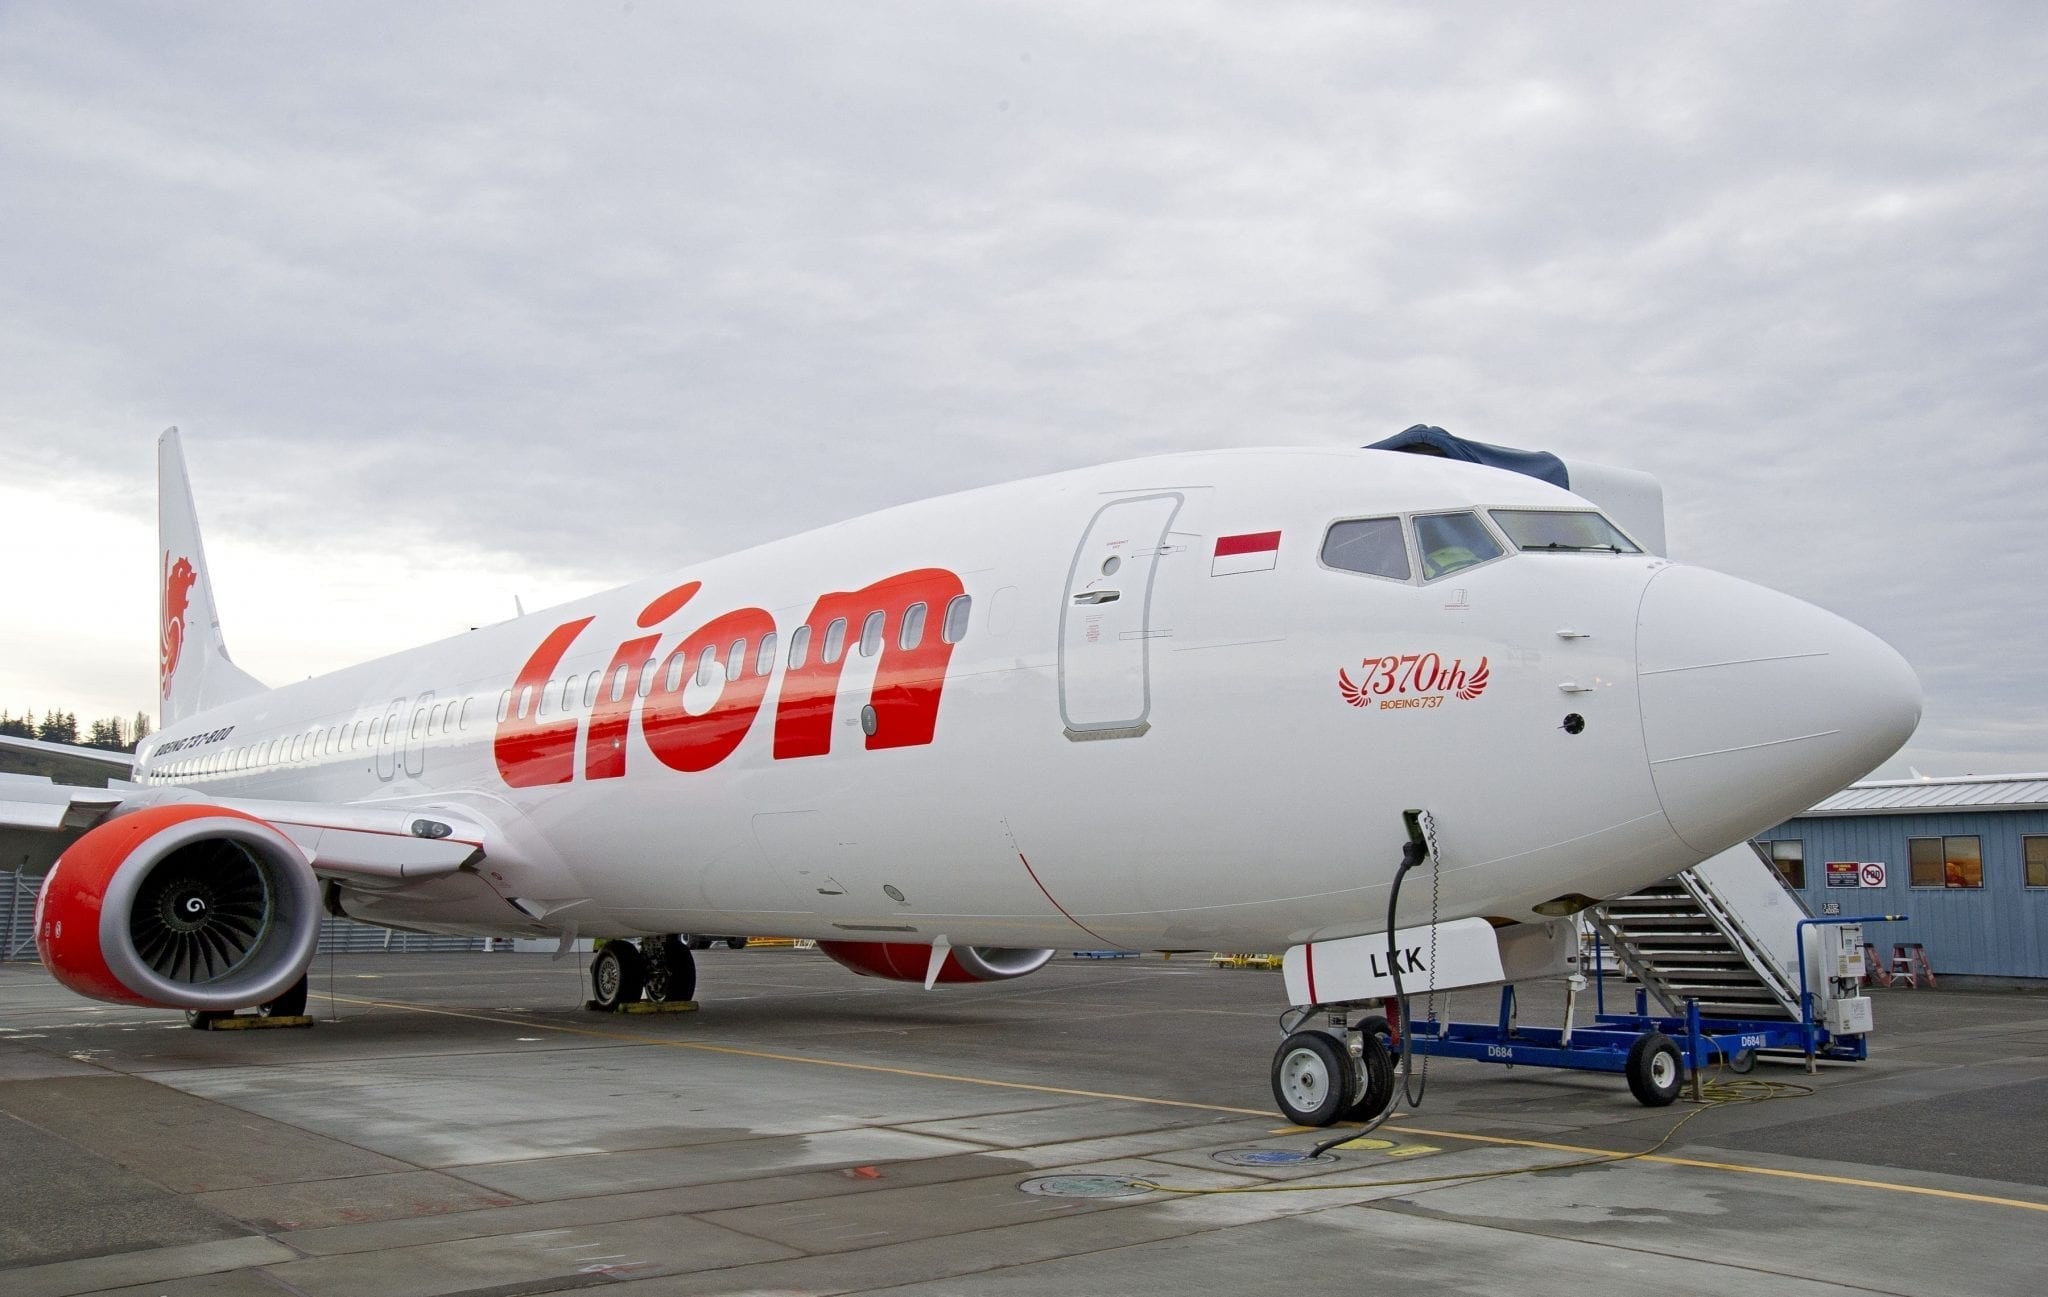 Lion Air, 737 aircraft, Boeing Field, Seattle, 2050x1300 HD Desktop